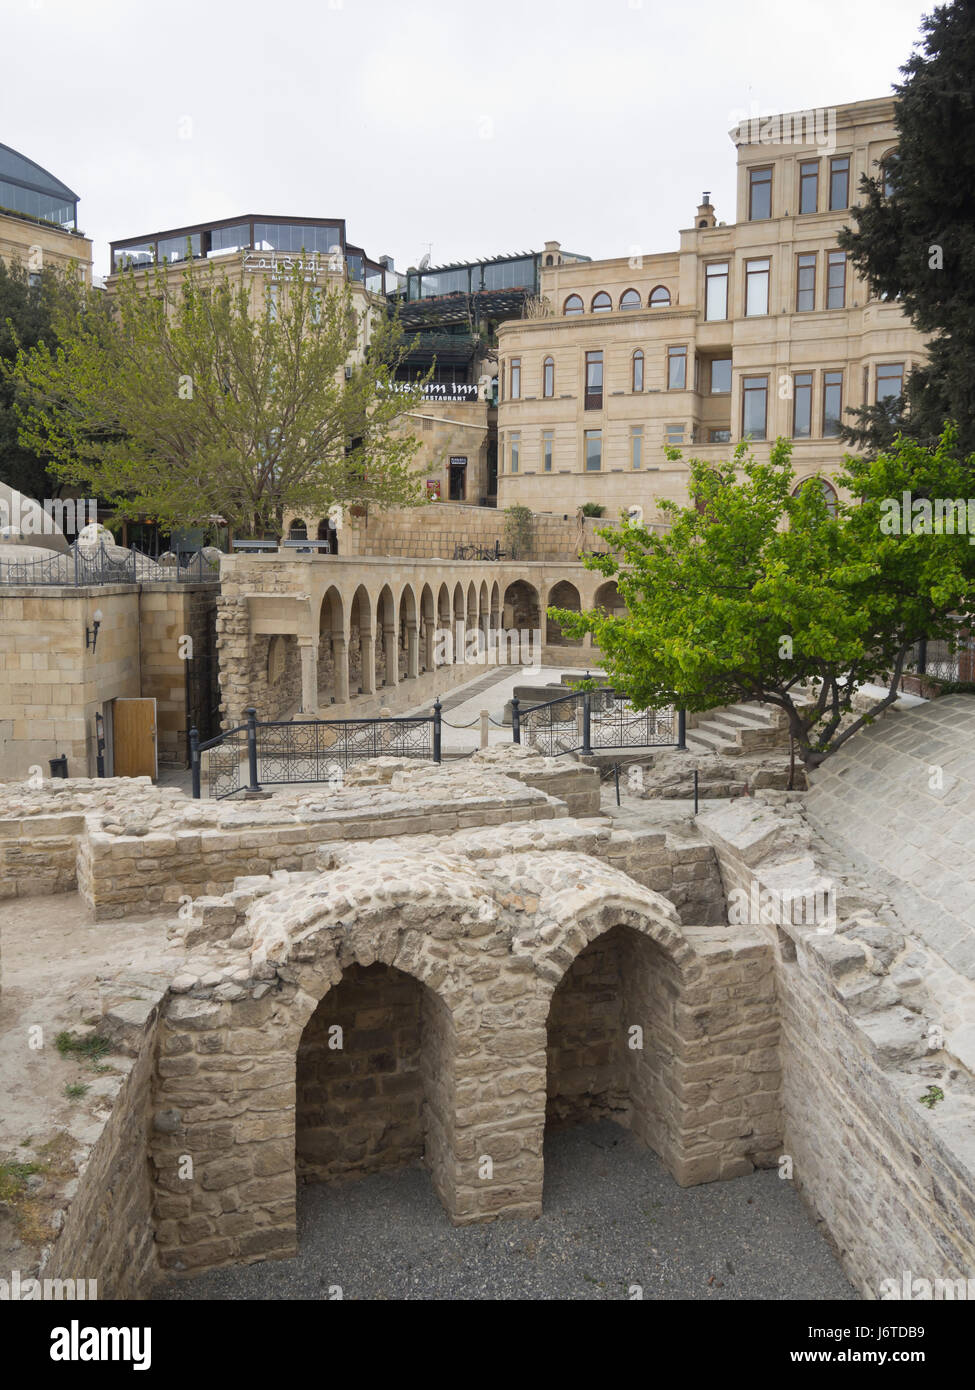 Baku old town, Icheri sheher, interna della città circondata da mura di fortificazione, sito Patrimonio Mondiale dell'Unesco, passaggio pedonale attraverso la vecchia rimane Foto Stock